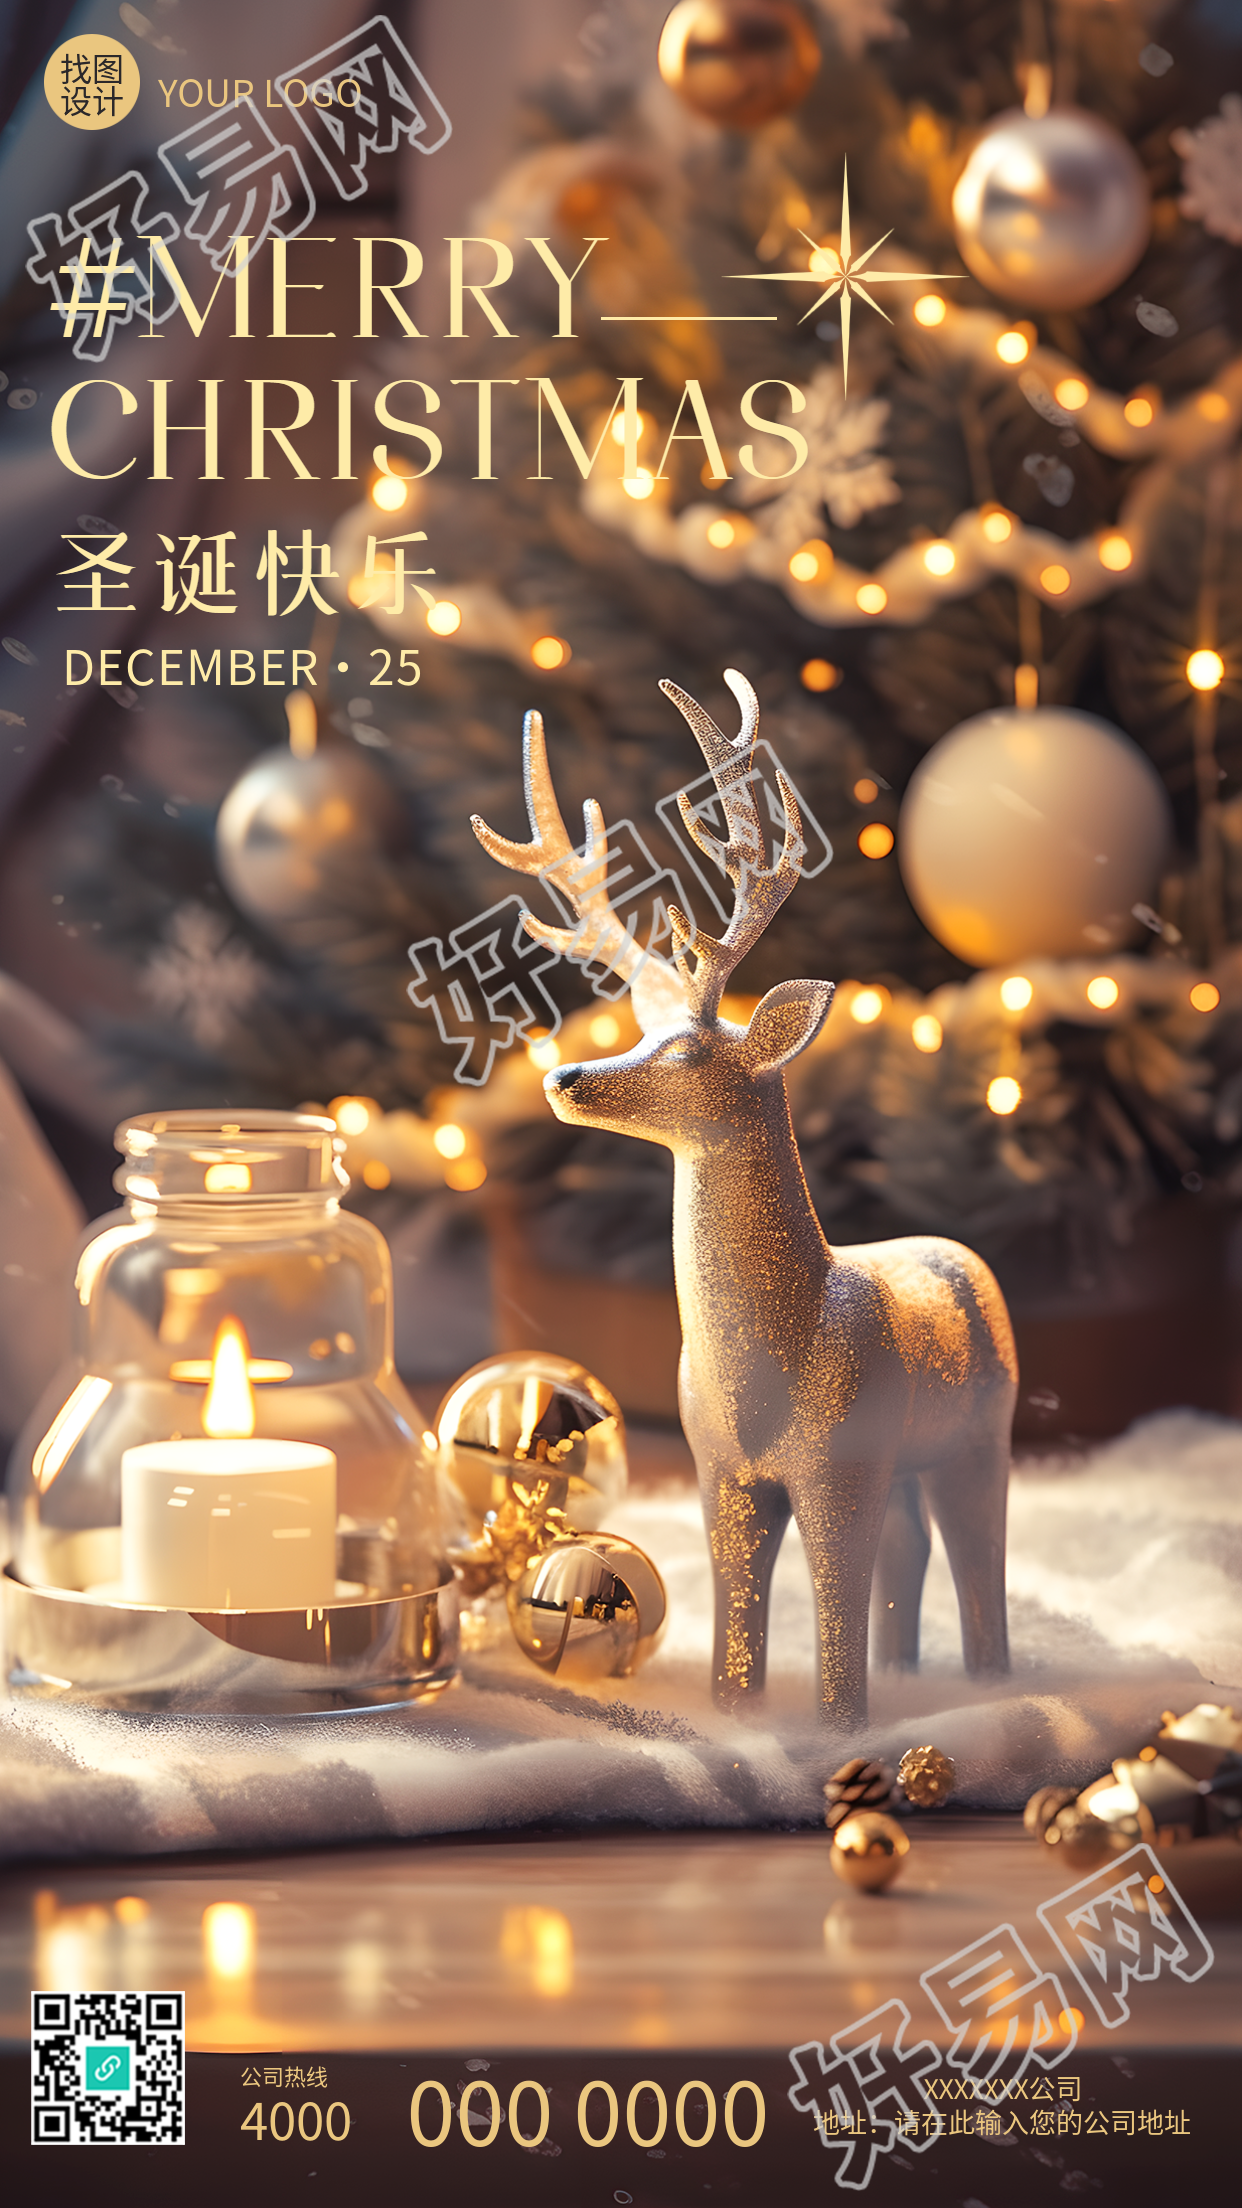 可爱的圣诞麋鹿摆件实景手机海报